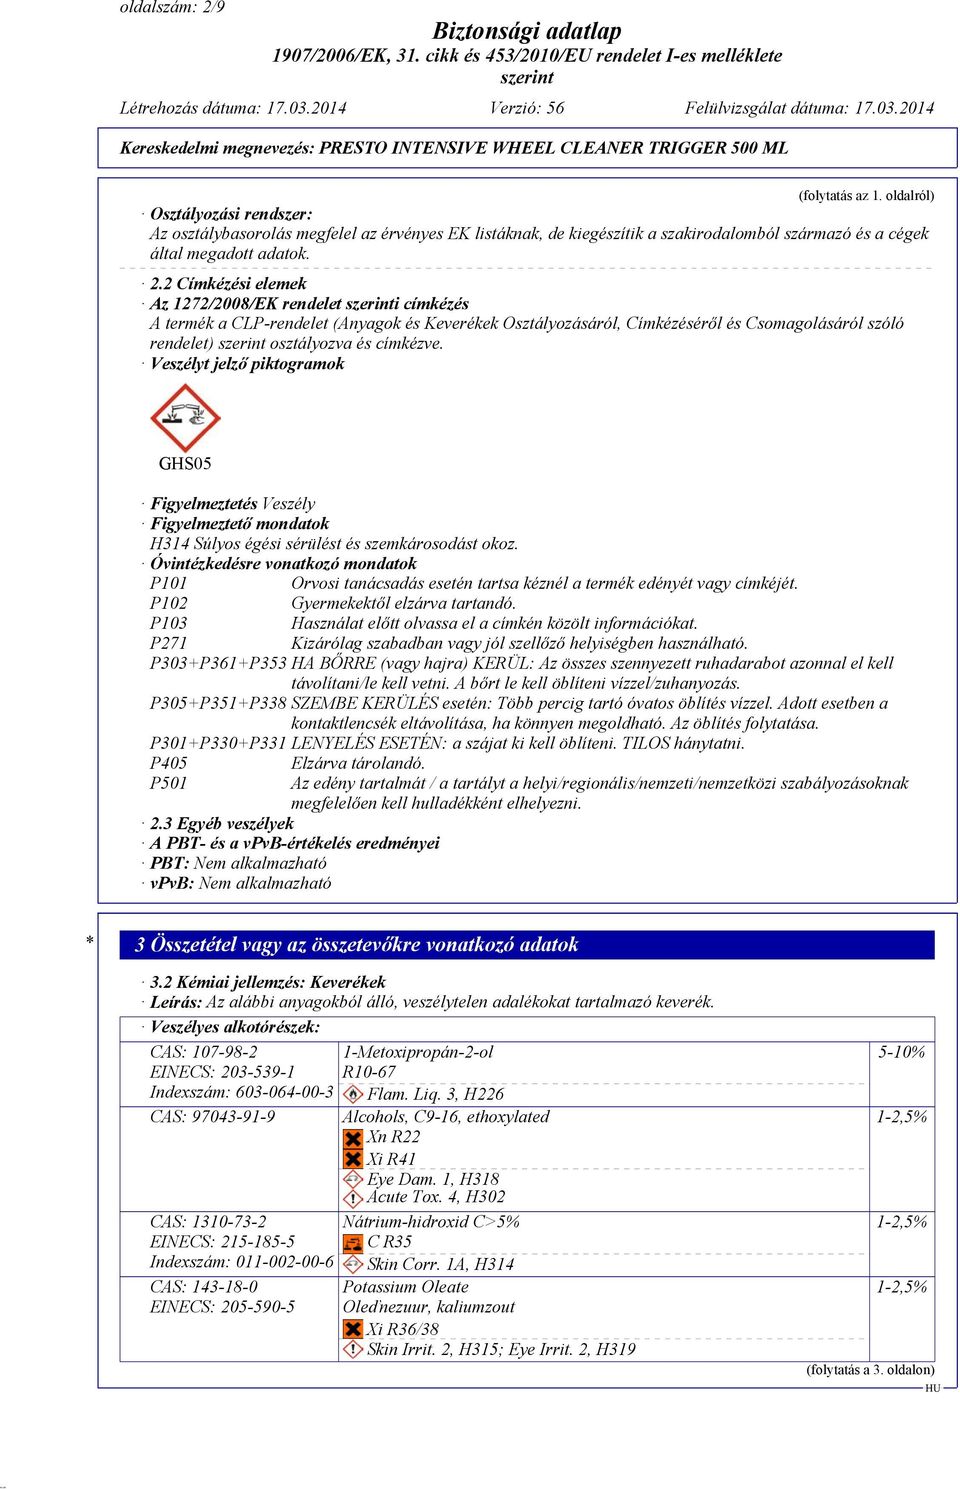 2 Címkézési elemek Az 1272/2008/EK rendelet i címkézés A termék a CLP-rendelet (Anyagok és Keverékek Osztályozásáról, Címkézéséről és Csomagolásáról szóló rendelet) osztályozva és címkézve.